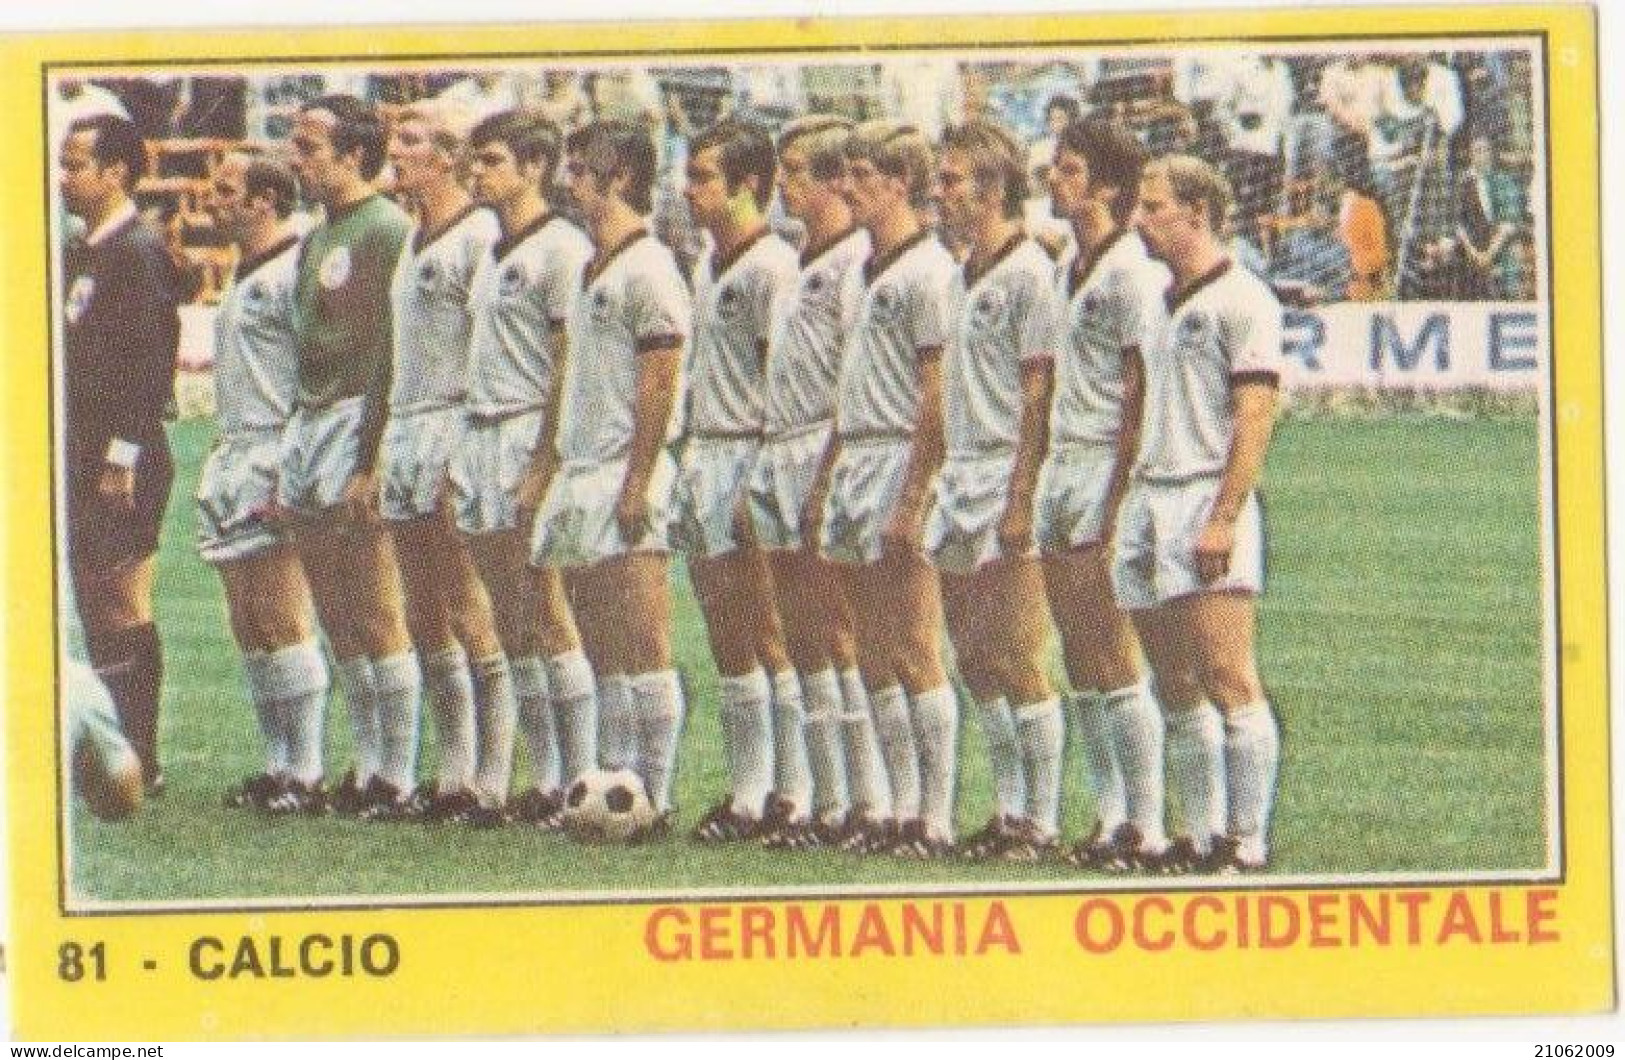 81 NAZIONALE GERMANIA OCCIDENTALE CALCIO FOOTBALL SOCCER MEXICO '70 - CAMPIONI DELLO SPORT PANINI 1970-71 - Trading-Karten